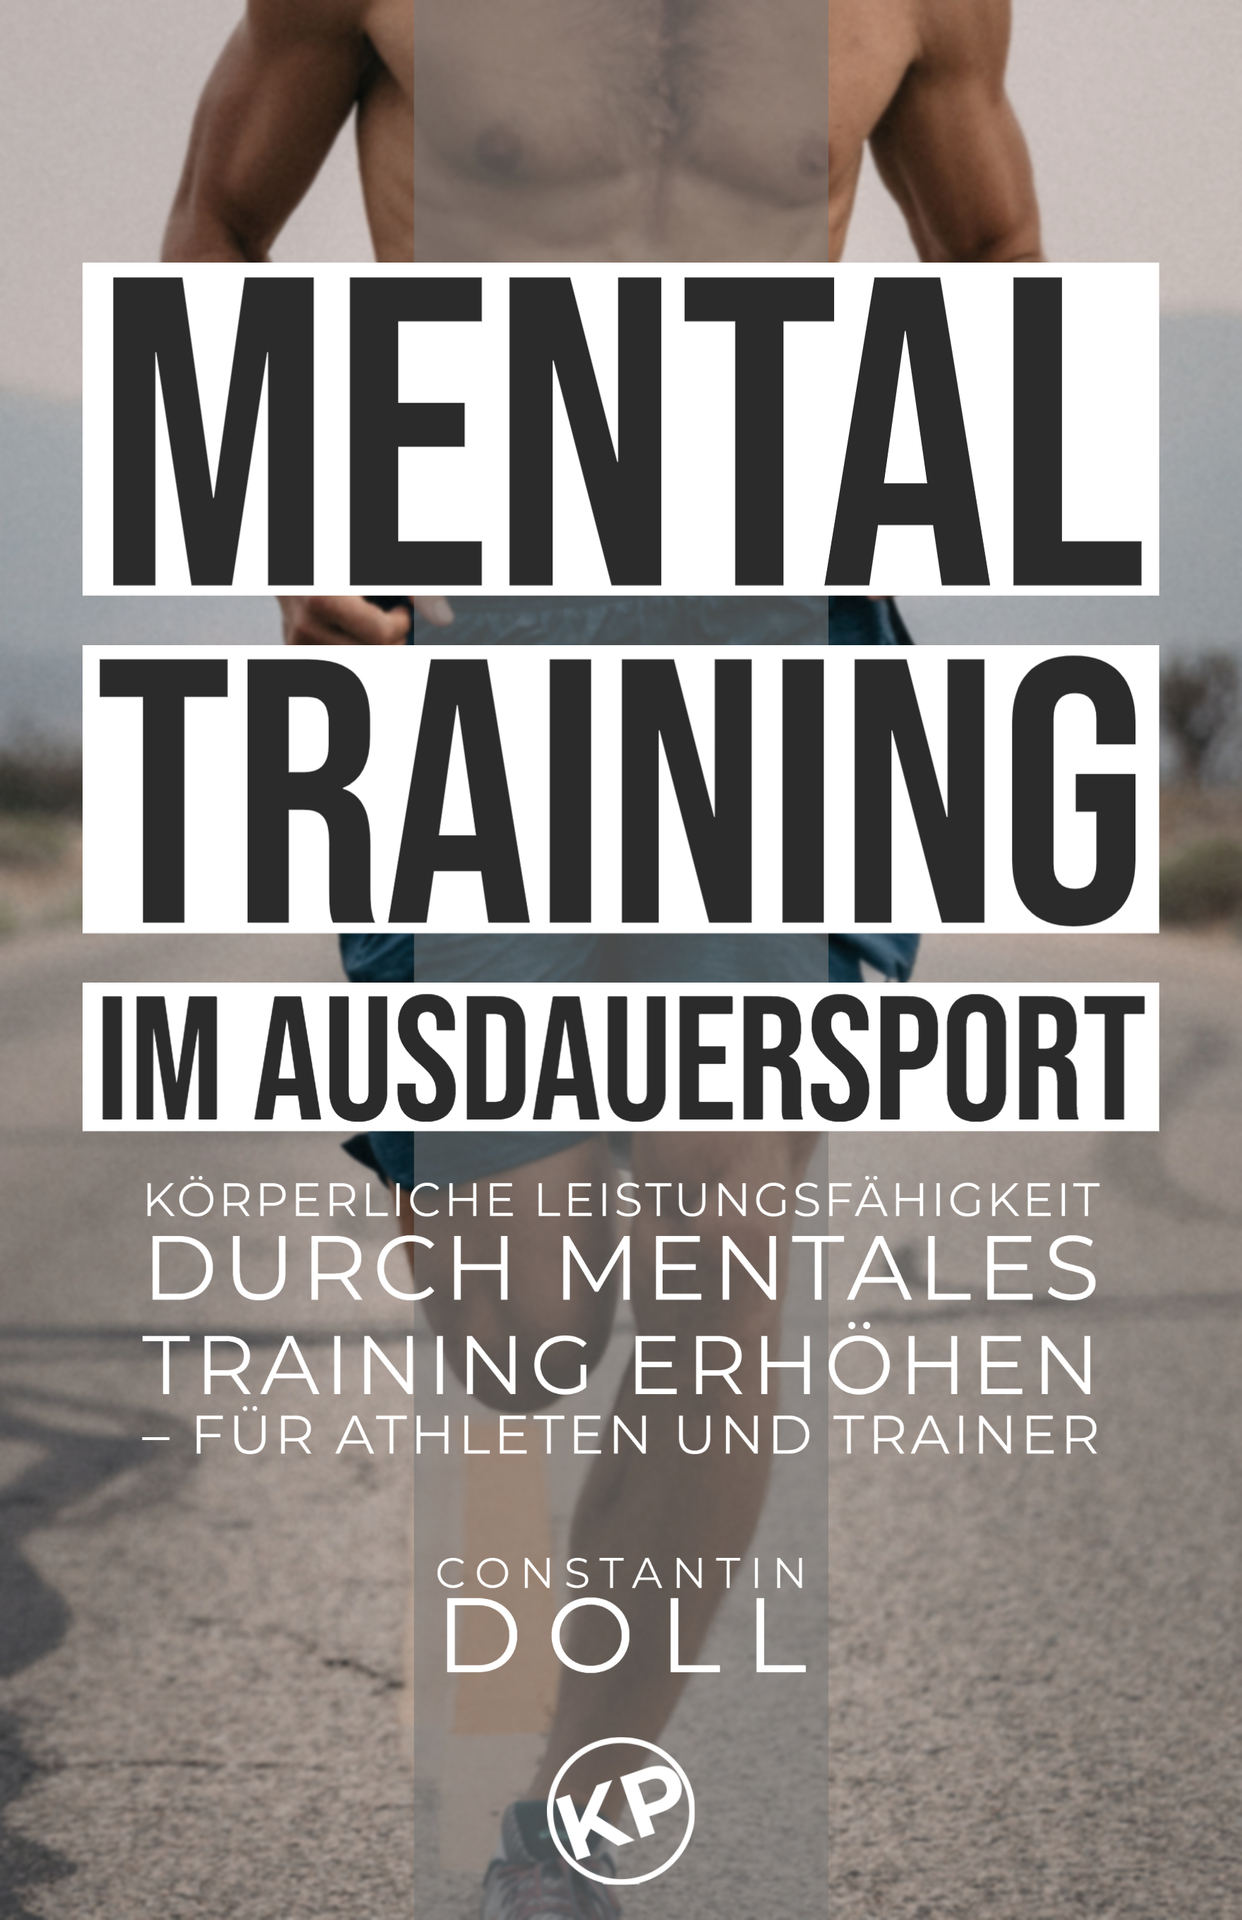 Mentaltraining im Ausdauersport: Körperliche Leistungsfähigkeit durch mentales Training erhöhen – für Athleten und Trainer (German Edition)